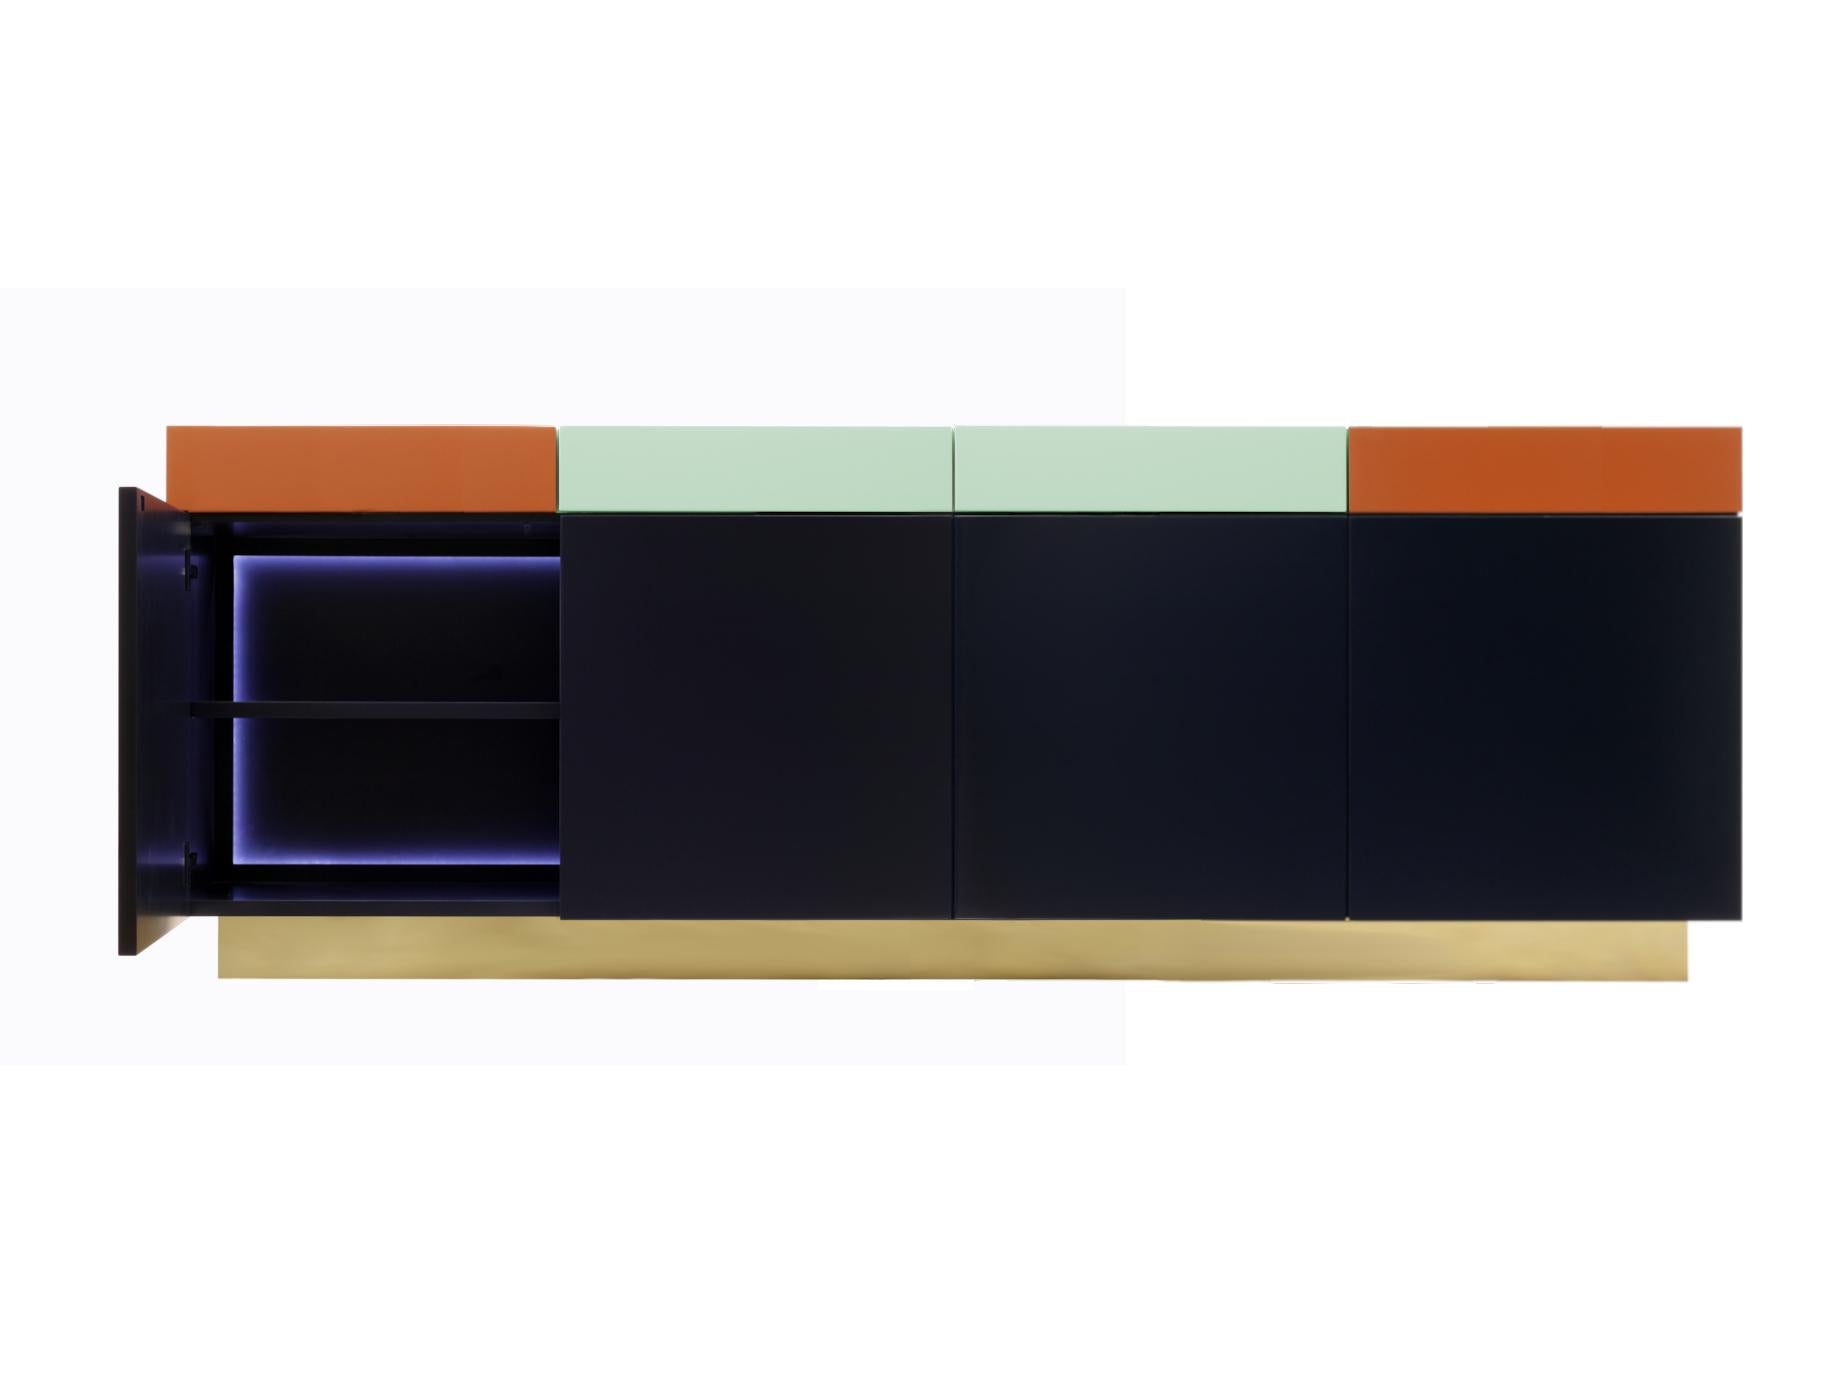 Un armario funcional y práctico, basado en una discreta elegancia, Greta combina un juego de formas geométricas, colores y carpintería.
El exterior está formado por 4 cajones en la parte superior y 4 puertas debajo, todo ello con la pintura de